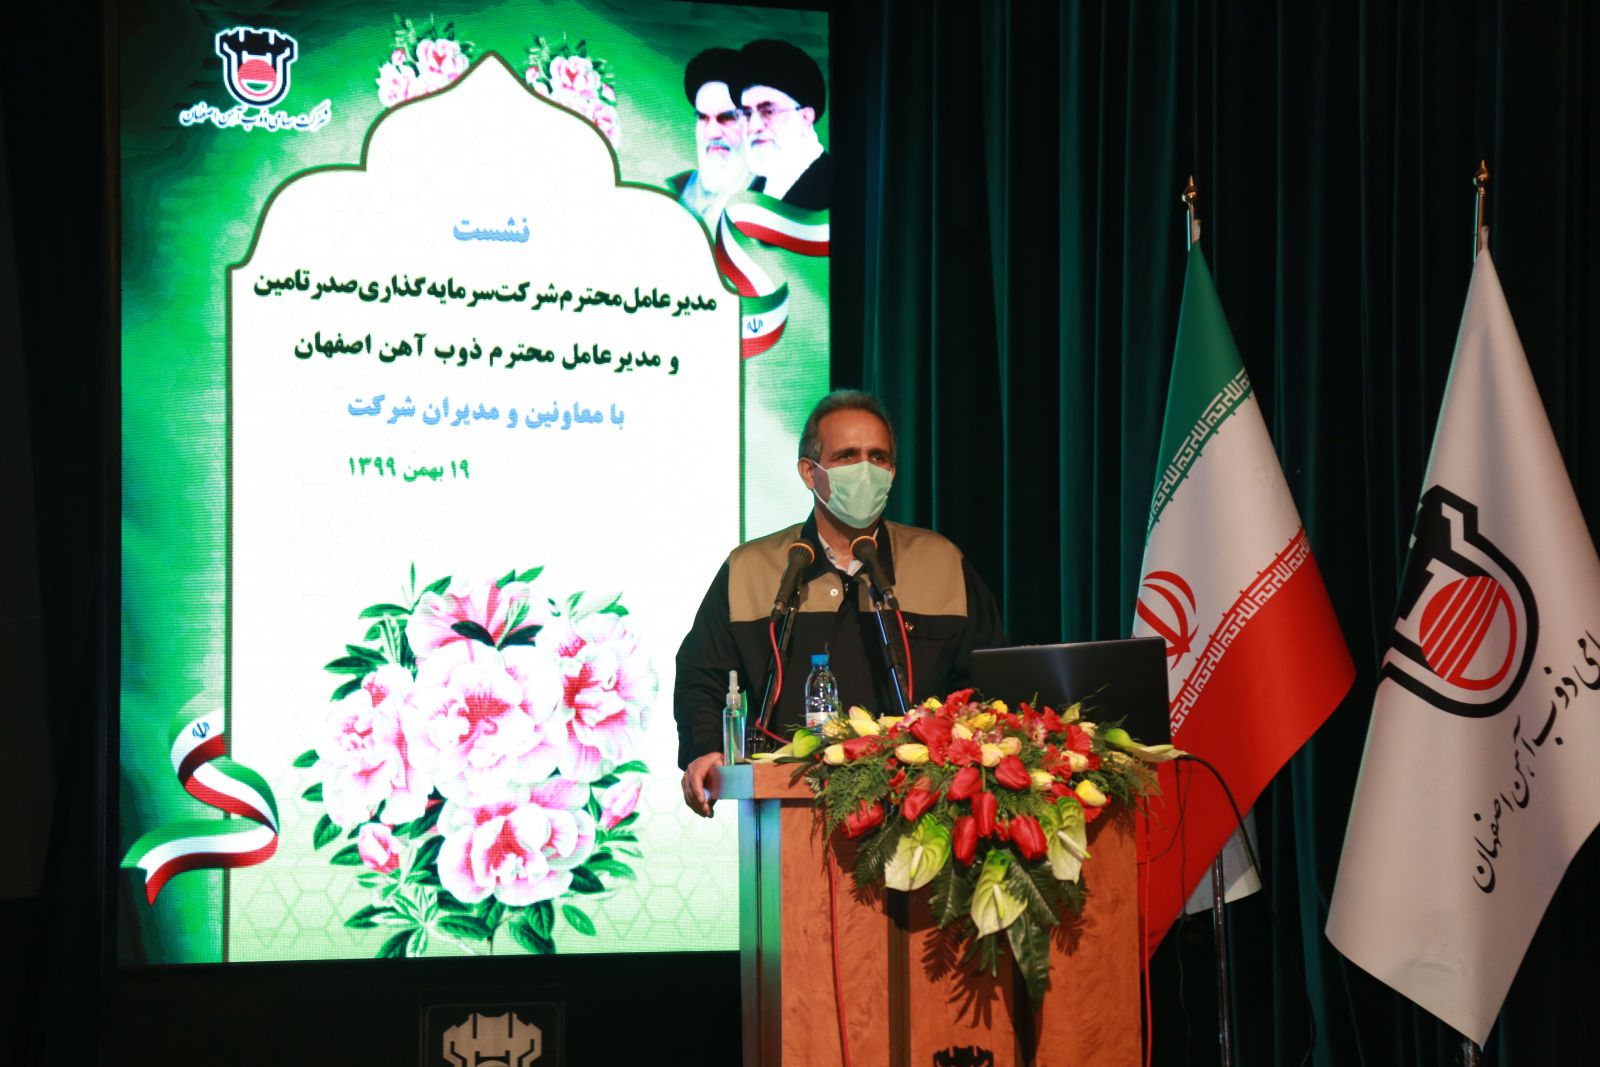 ذوب آهن اصفهان با وجود تحریم و شیوع کرونا در مسیر پیشرفت